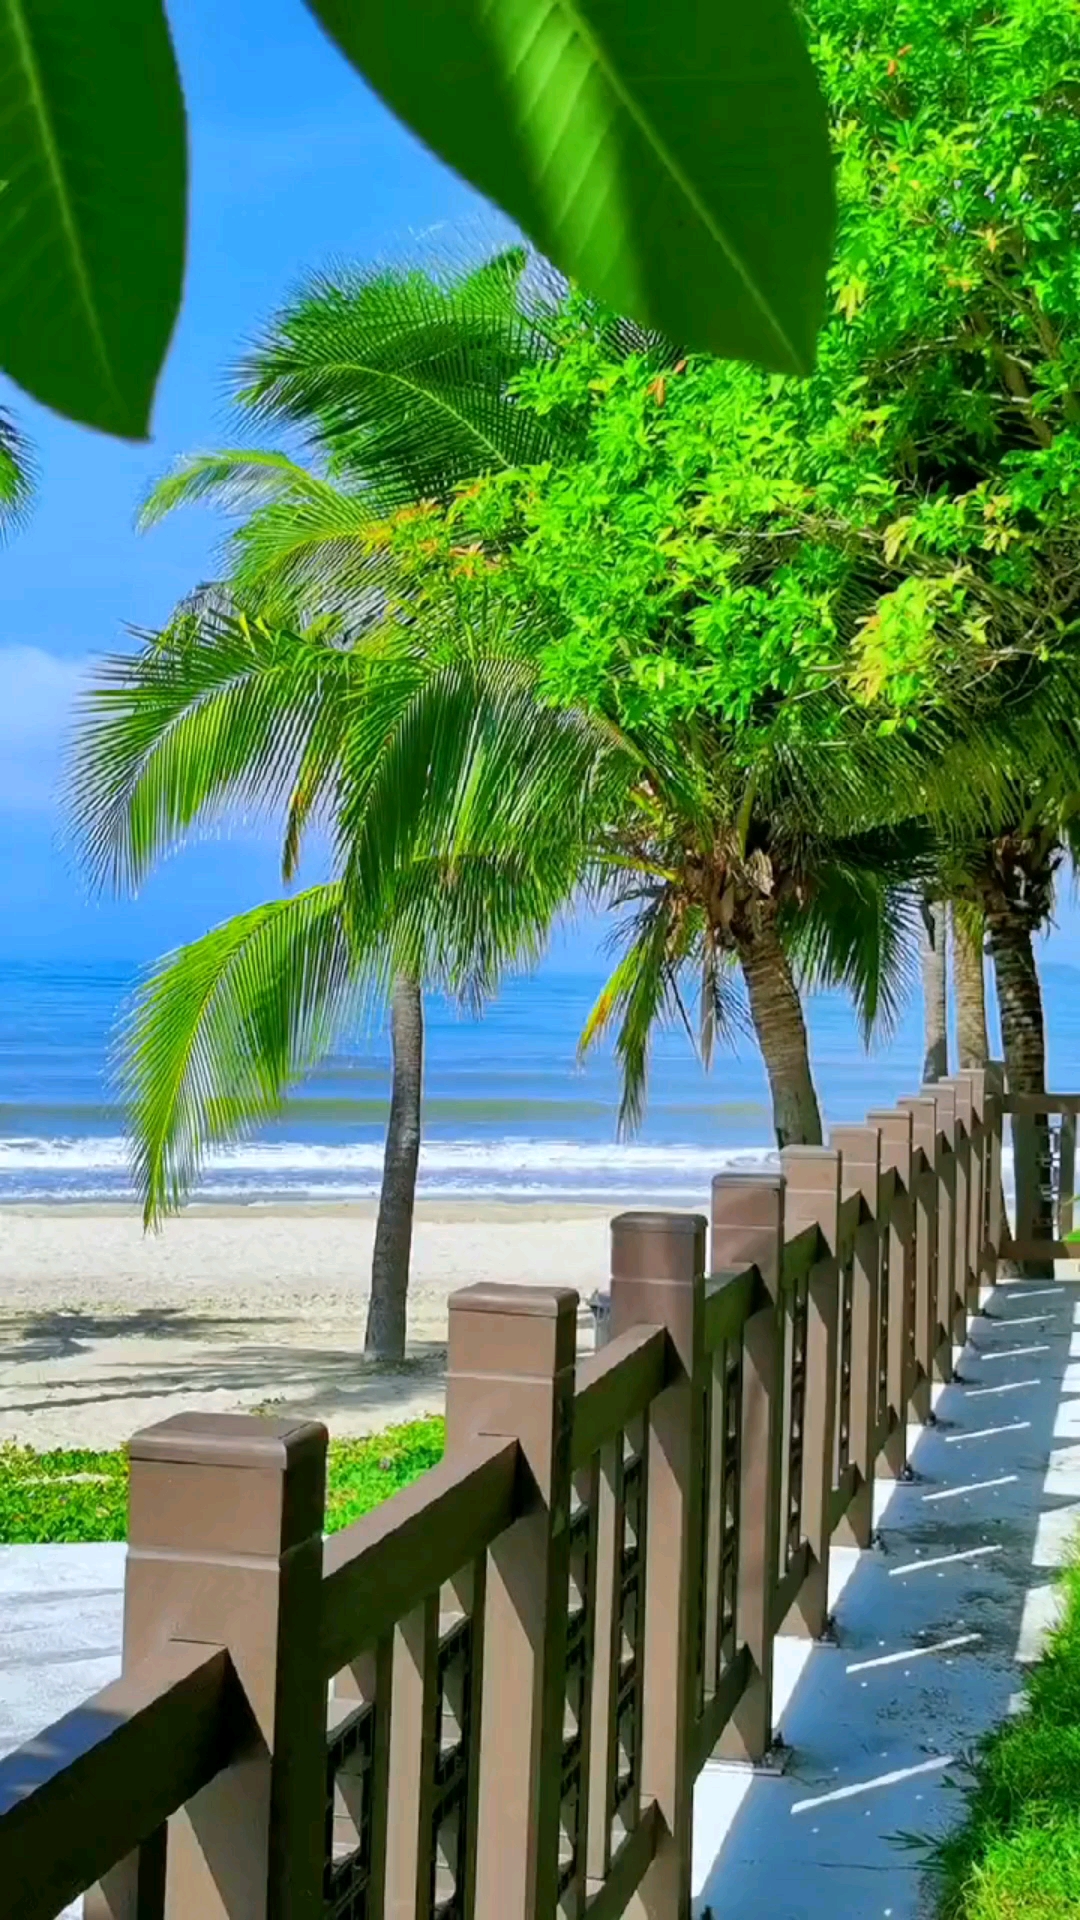 三亚:海边的椰林中,夏日清凉,风景秀丽,椰海风情醉游人!